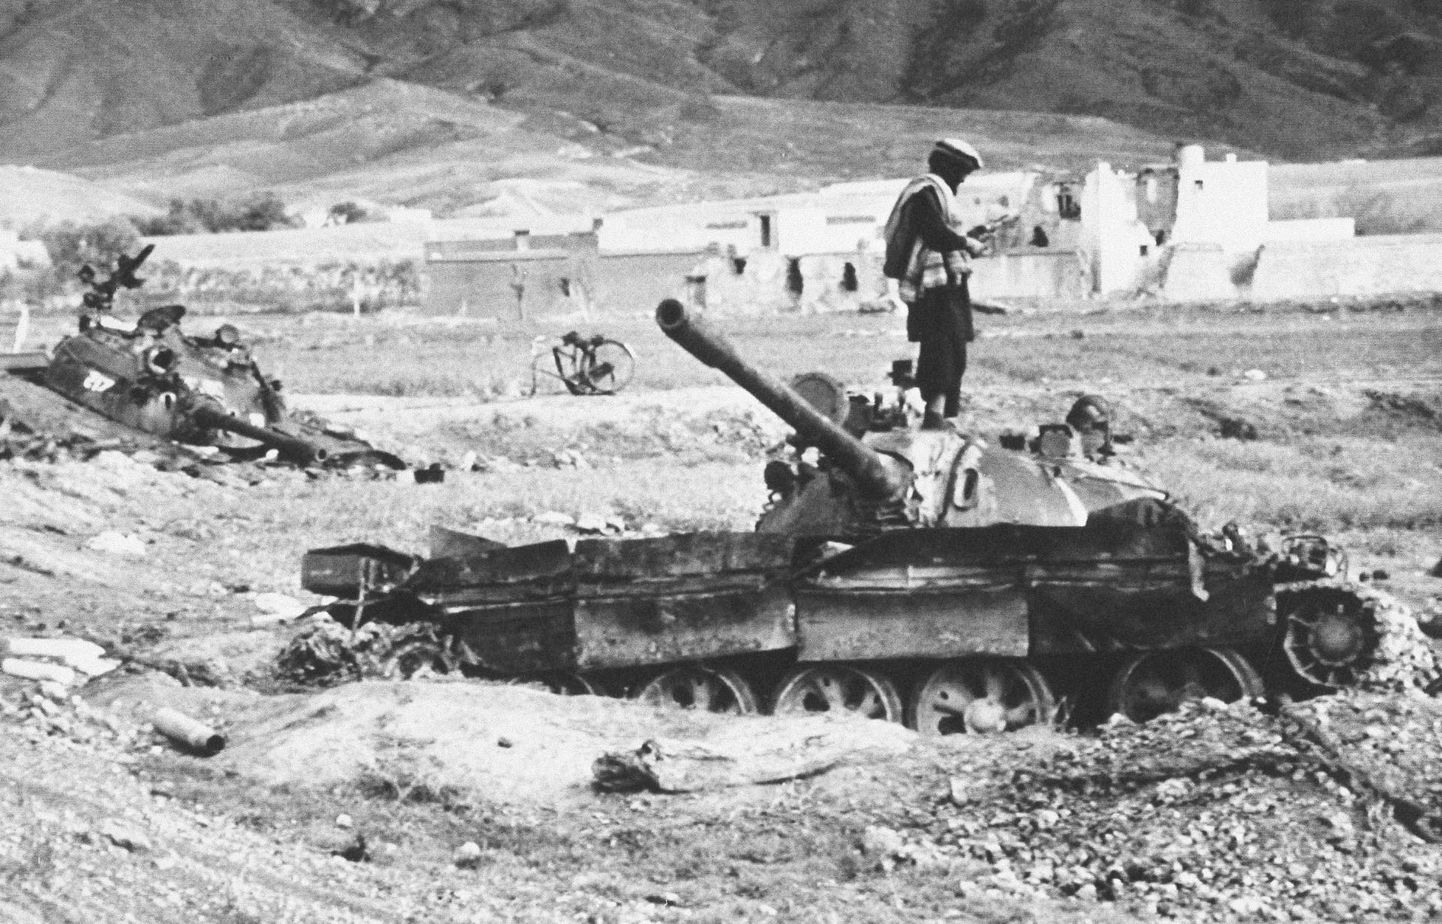 Afghanistan, destroyed Soviet tank, April 2, 1989.